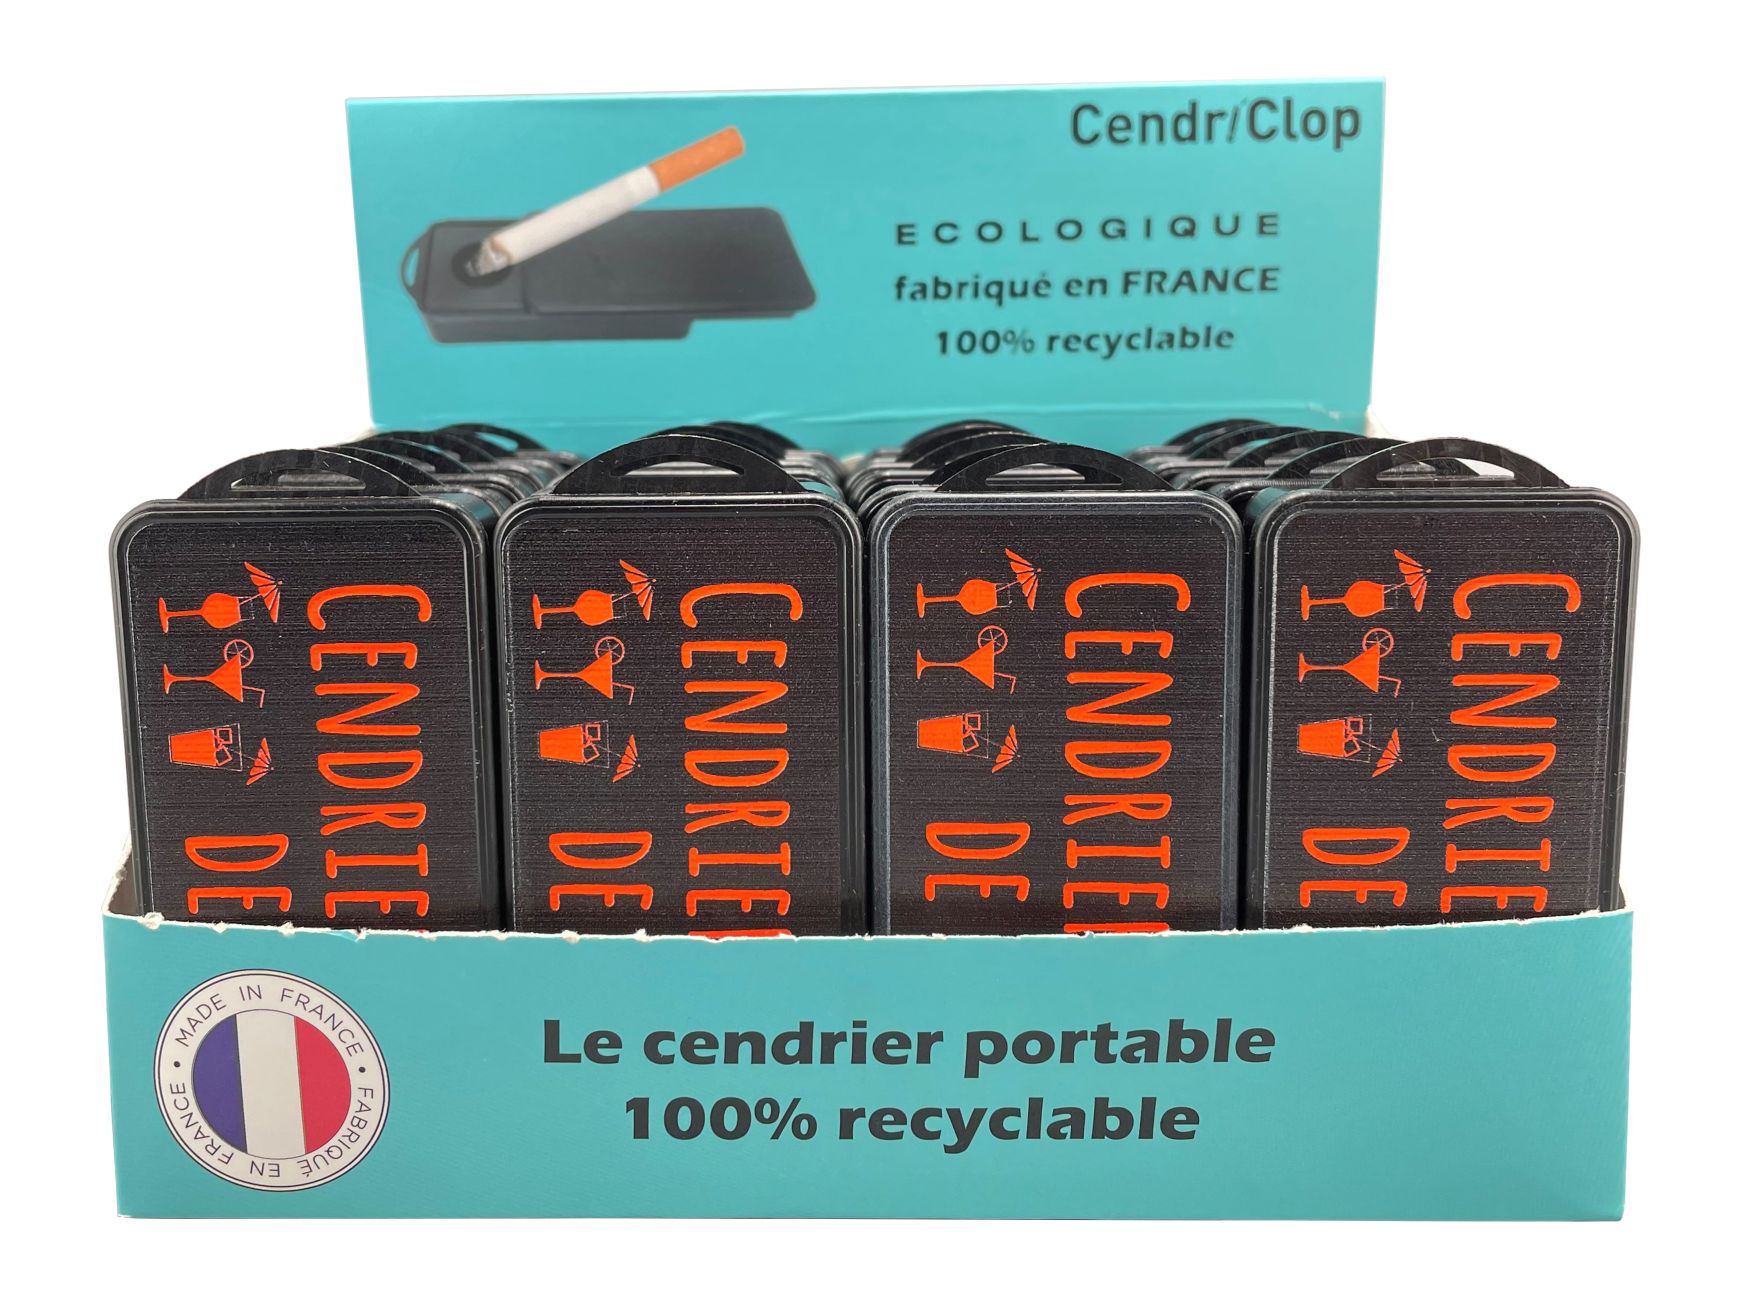 Cendriclop le cendrier portable 100% recyclable décors Plage Orange Fluo